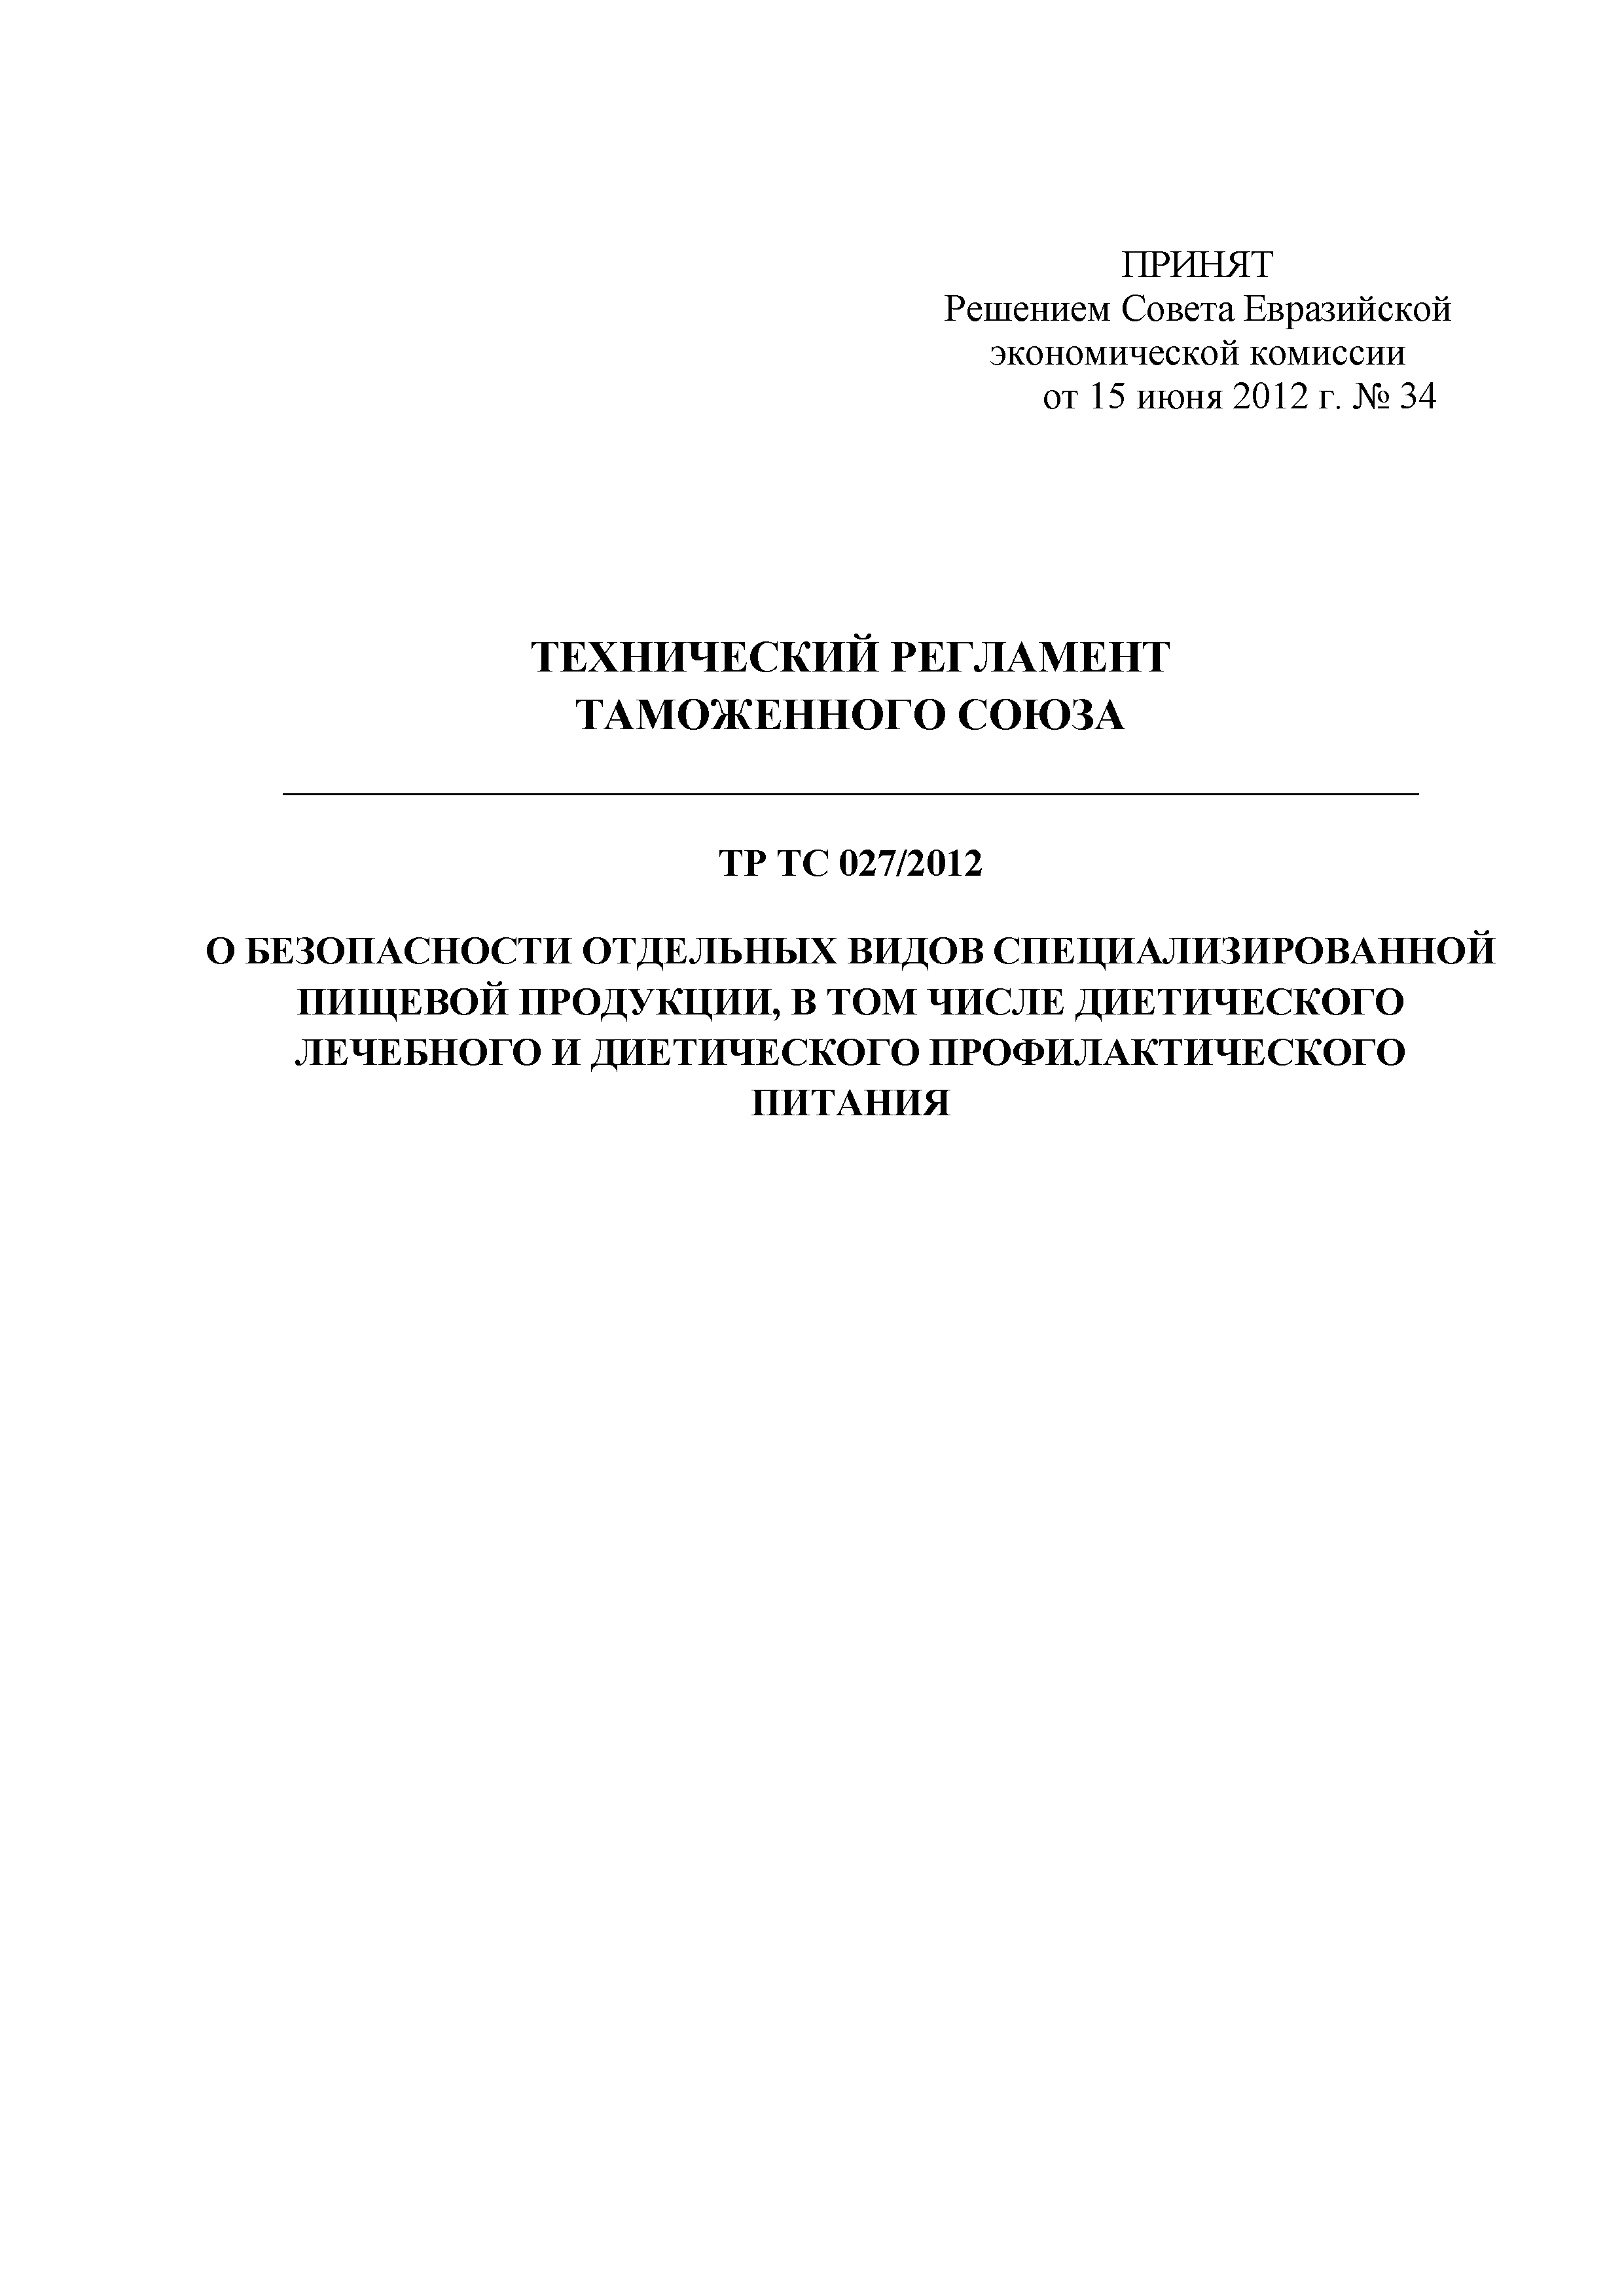 Технический регламент Таможенного союза 027/2012